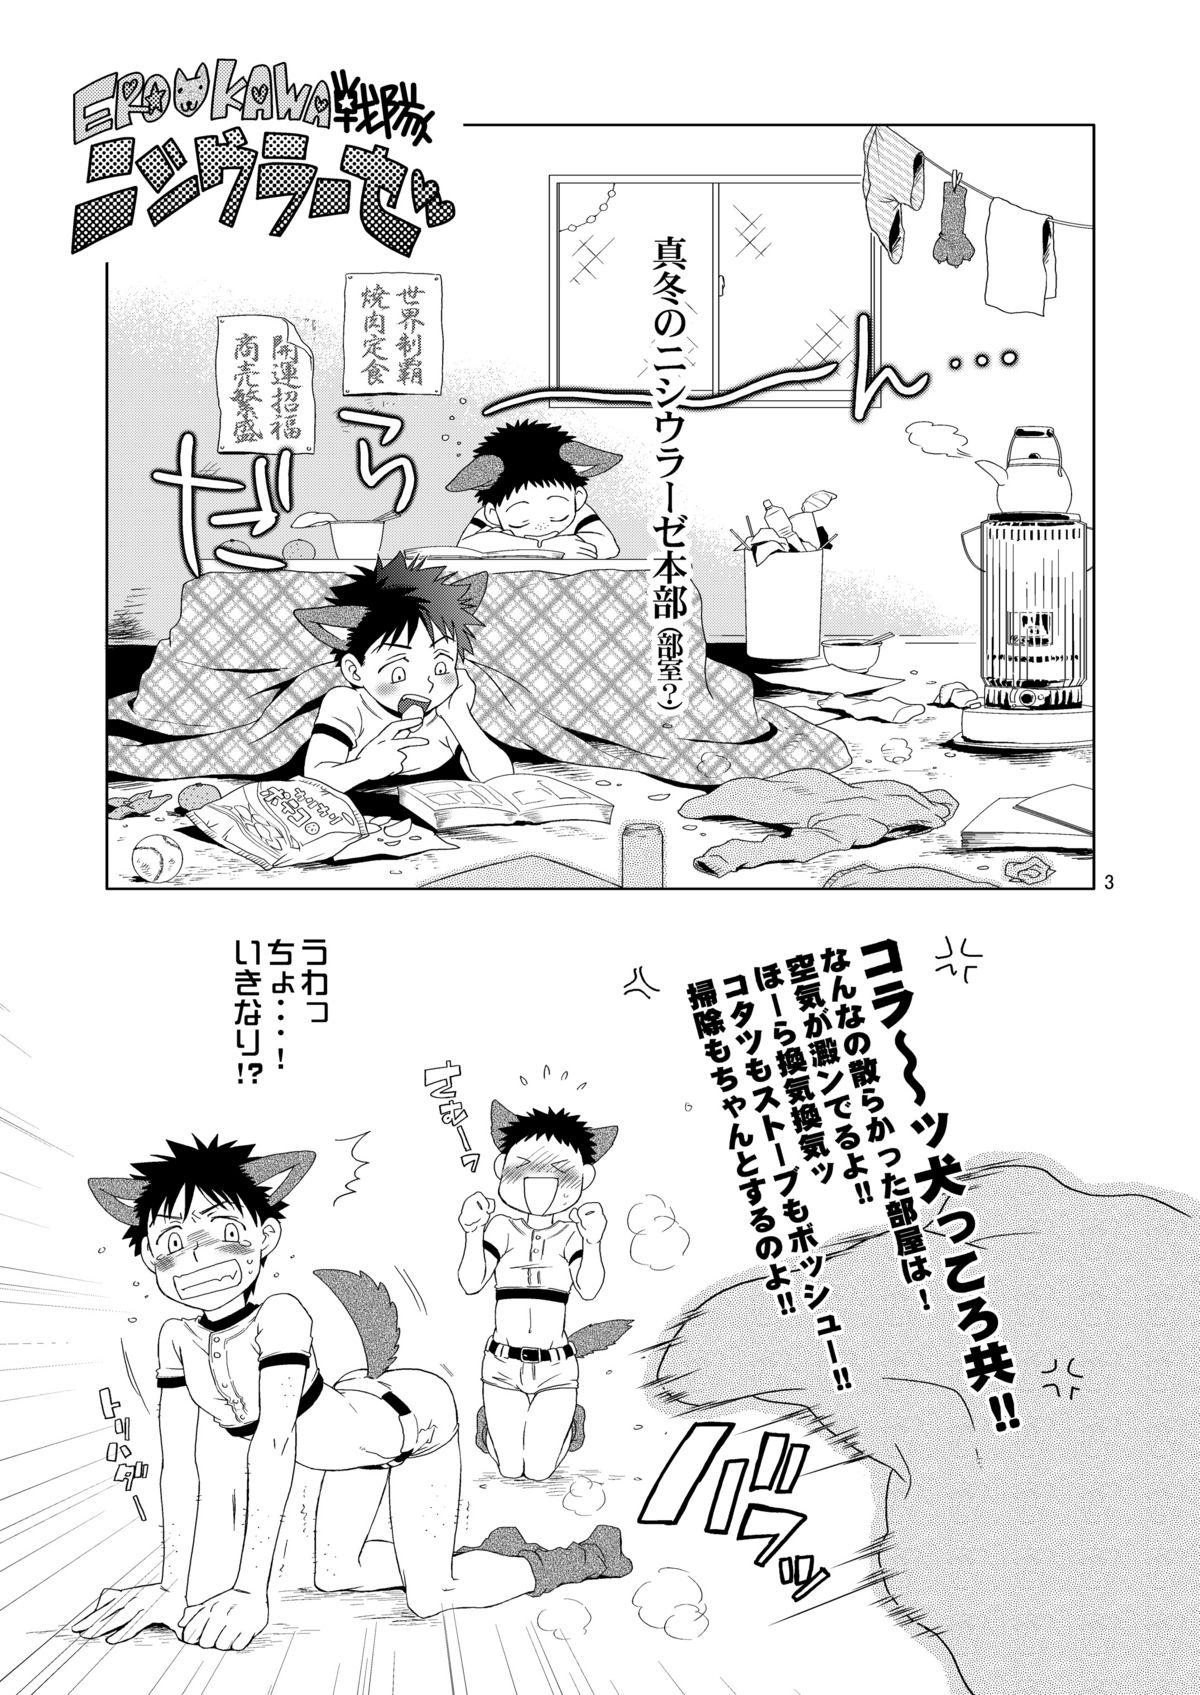 Atm Tsuyudaku Fight! 4 - Ookiku furikabutte Wank - Page 4